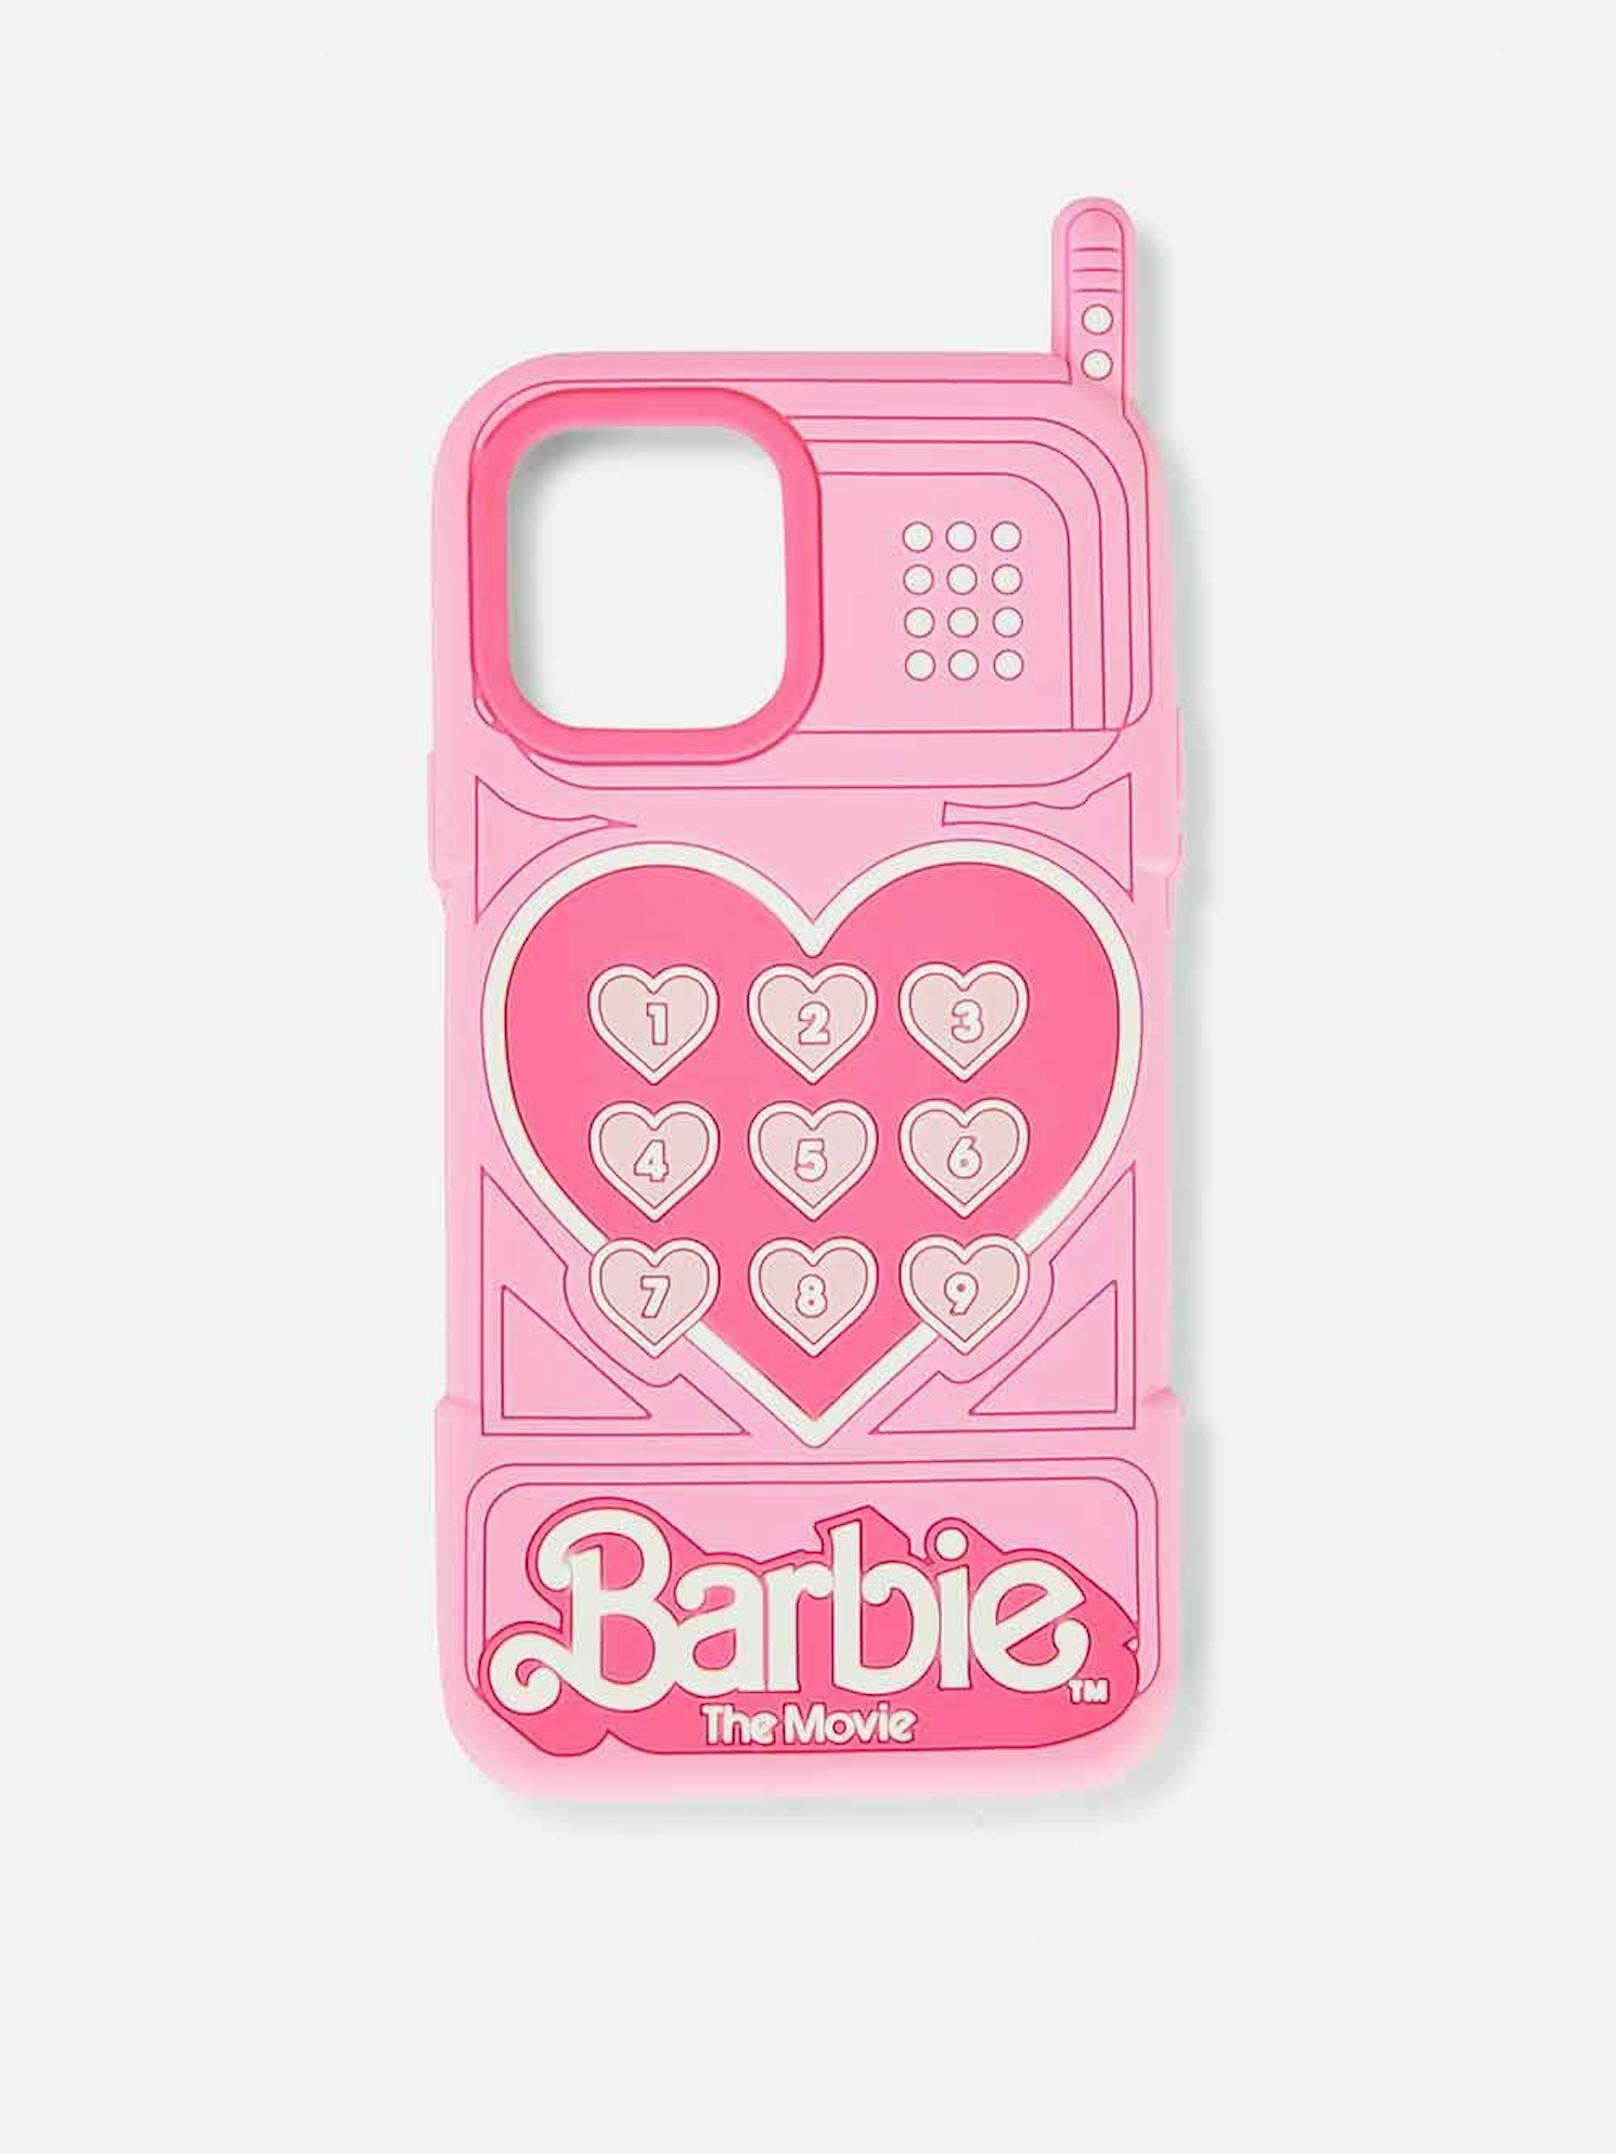 Auch das iPhone sieht für "<a data-li-document-ref="100268396" href="https://www.heute.at/g/life-erste-barbie-puppe-mit-downsyndrom-100268396">Barbie - The Movie</a>" rosa!&nbsp;